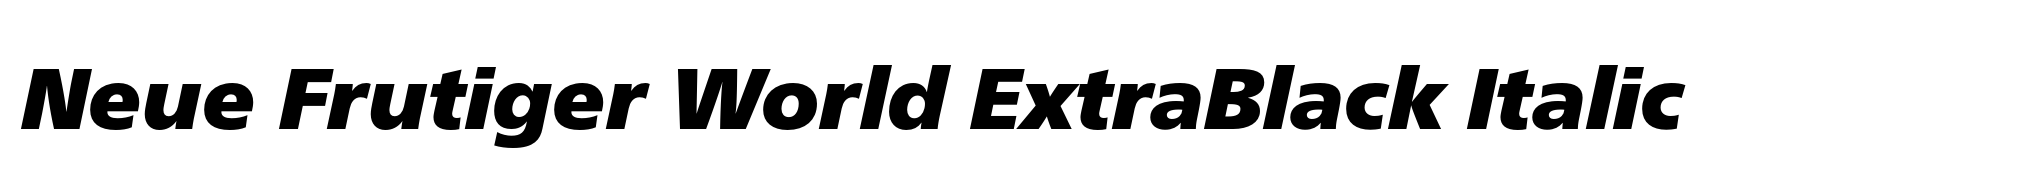 Neue Frutiger World ExtraBlack Italic image